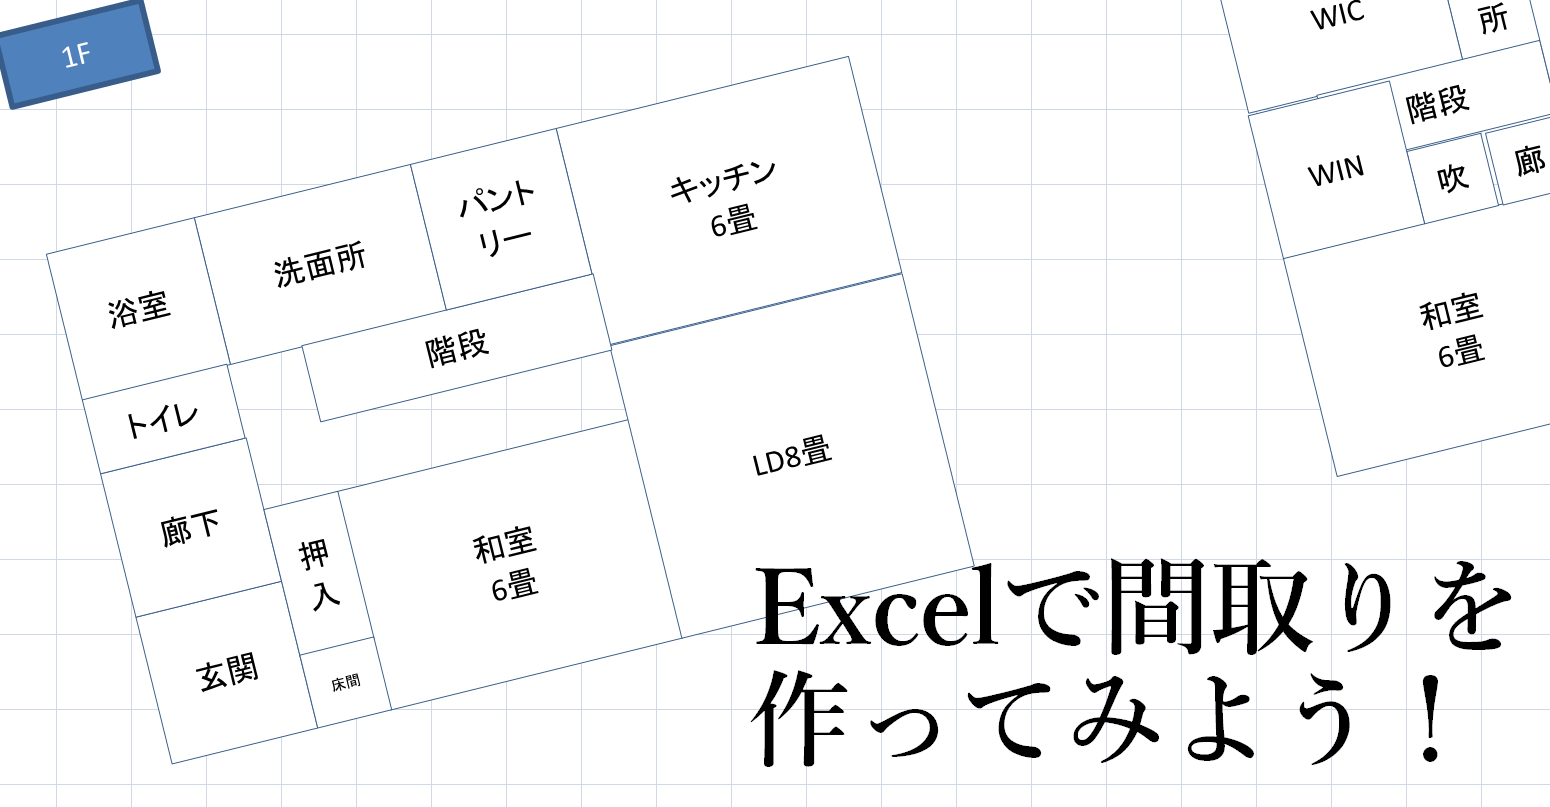 Excelで間取りの作り方 完成版ダウンロード 5 5 ローコストハウス Lifeログ